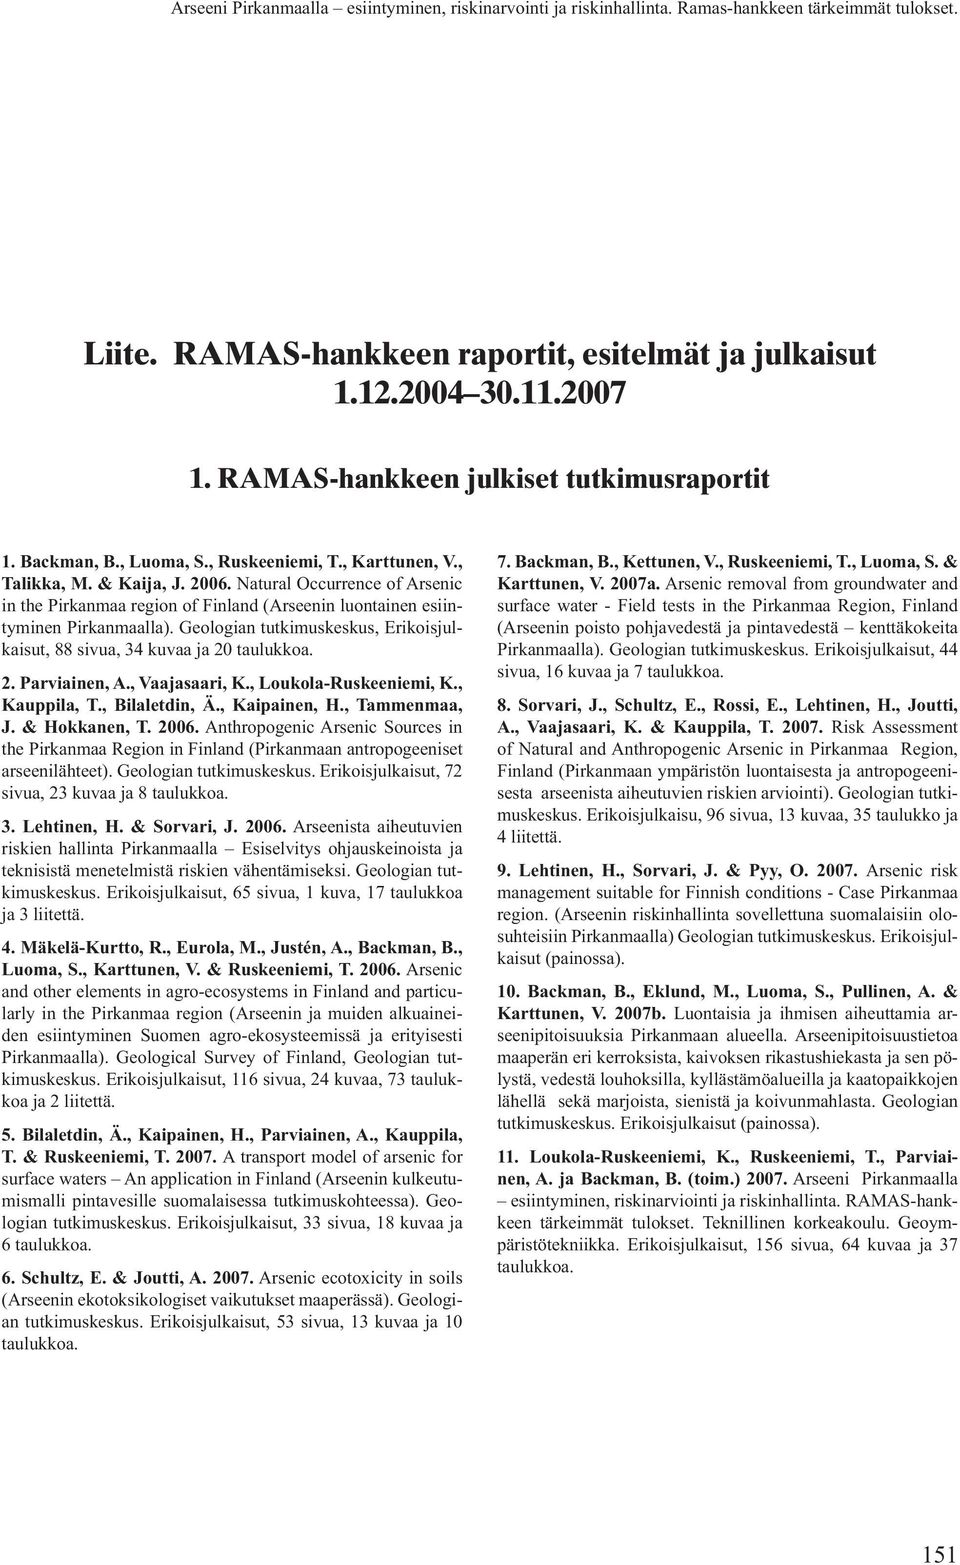 Geologian tutkimuskeskus, Erikoisjulkaisut, 88 sivua, 34 kuvaa ja 20 taulukkoa. 2. Parviainen, A., Vaajasaari, K., Loukola-Ruskeeniemi, K., Kauppila, T., Bilaletdin, Ä., Kaipainen, H., Tammenmaa, J.